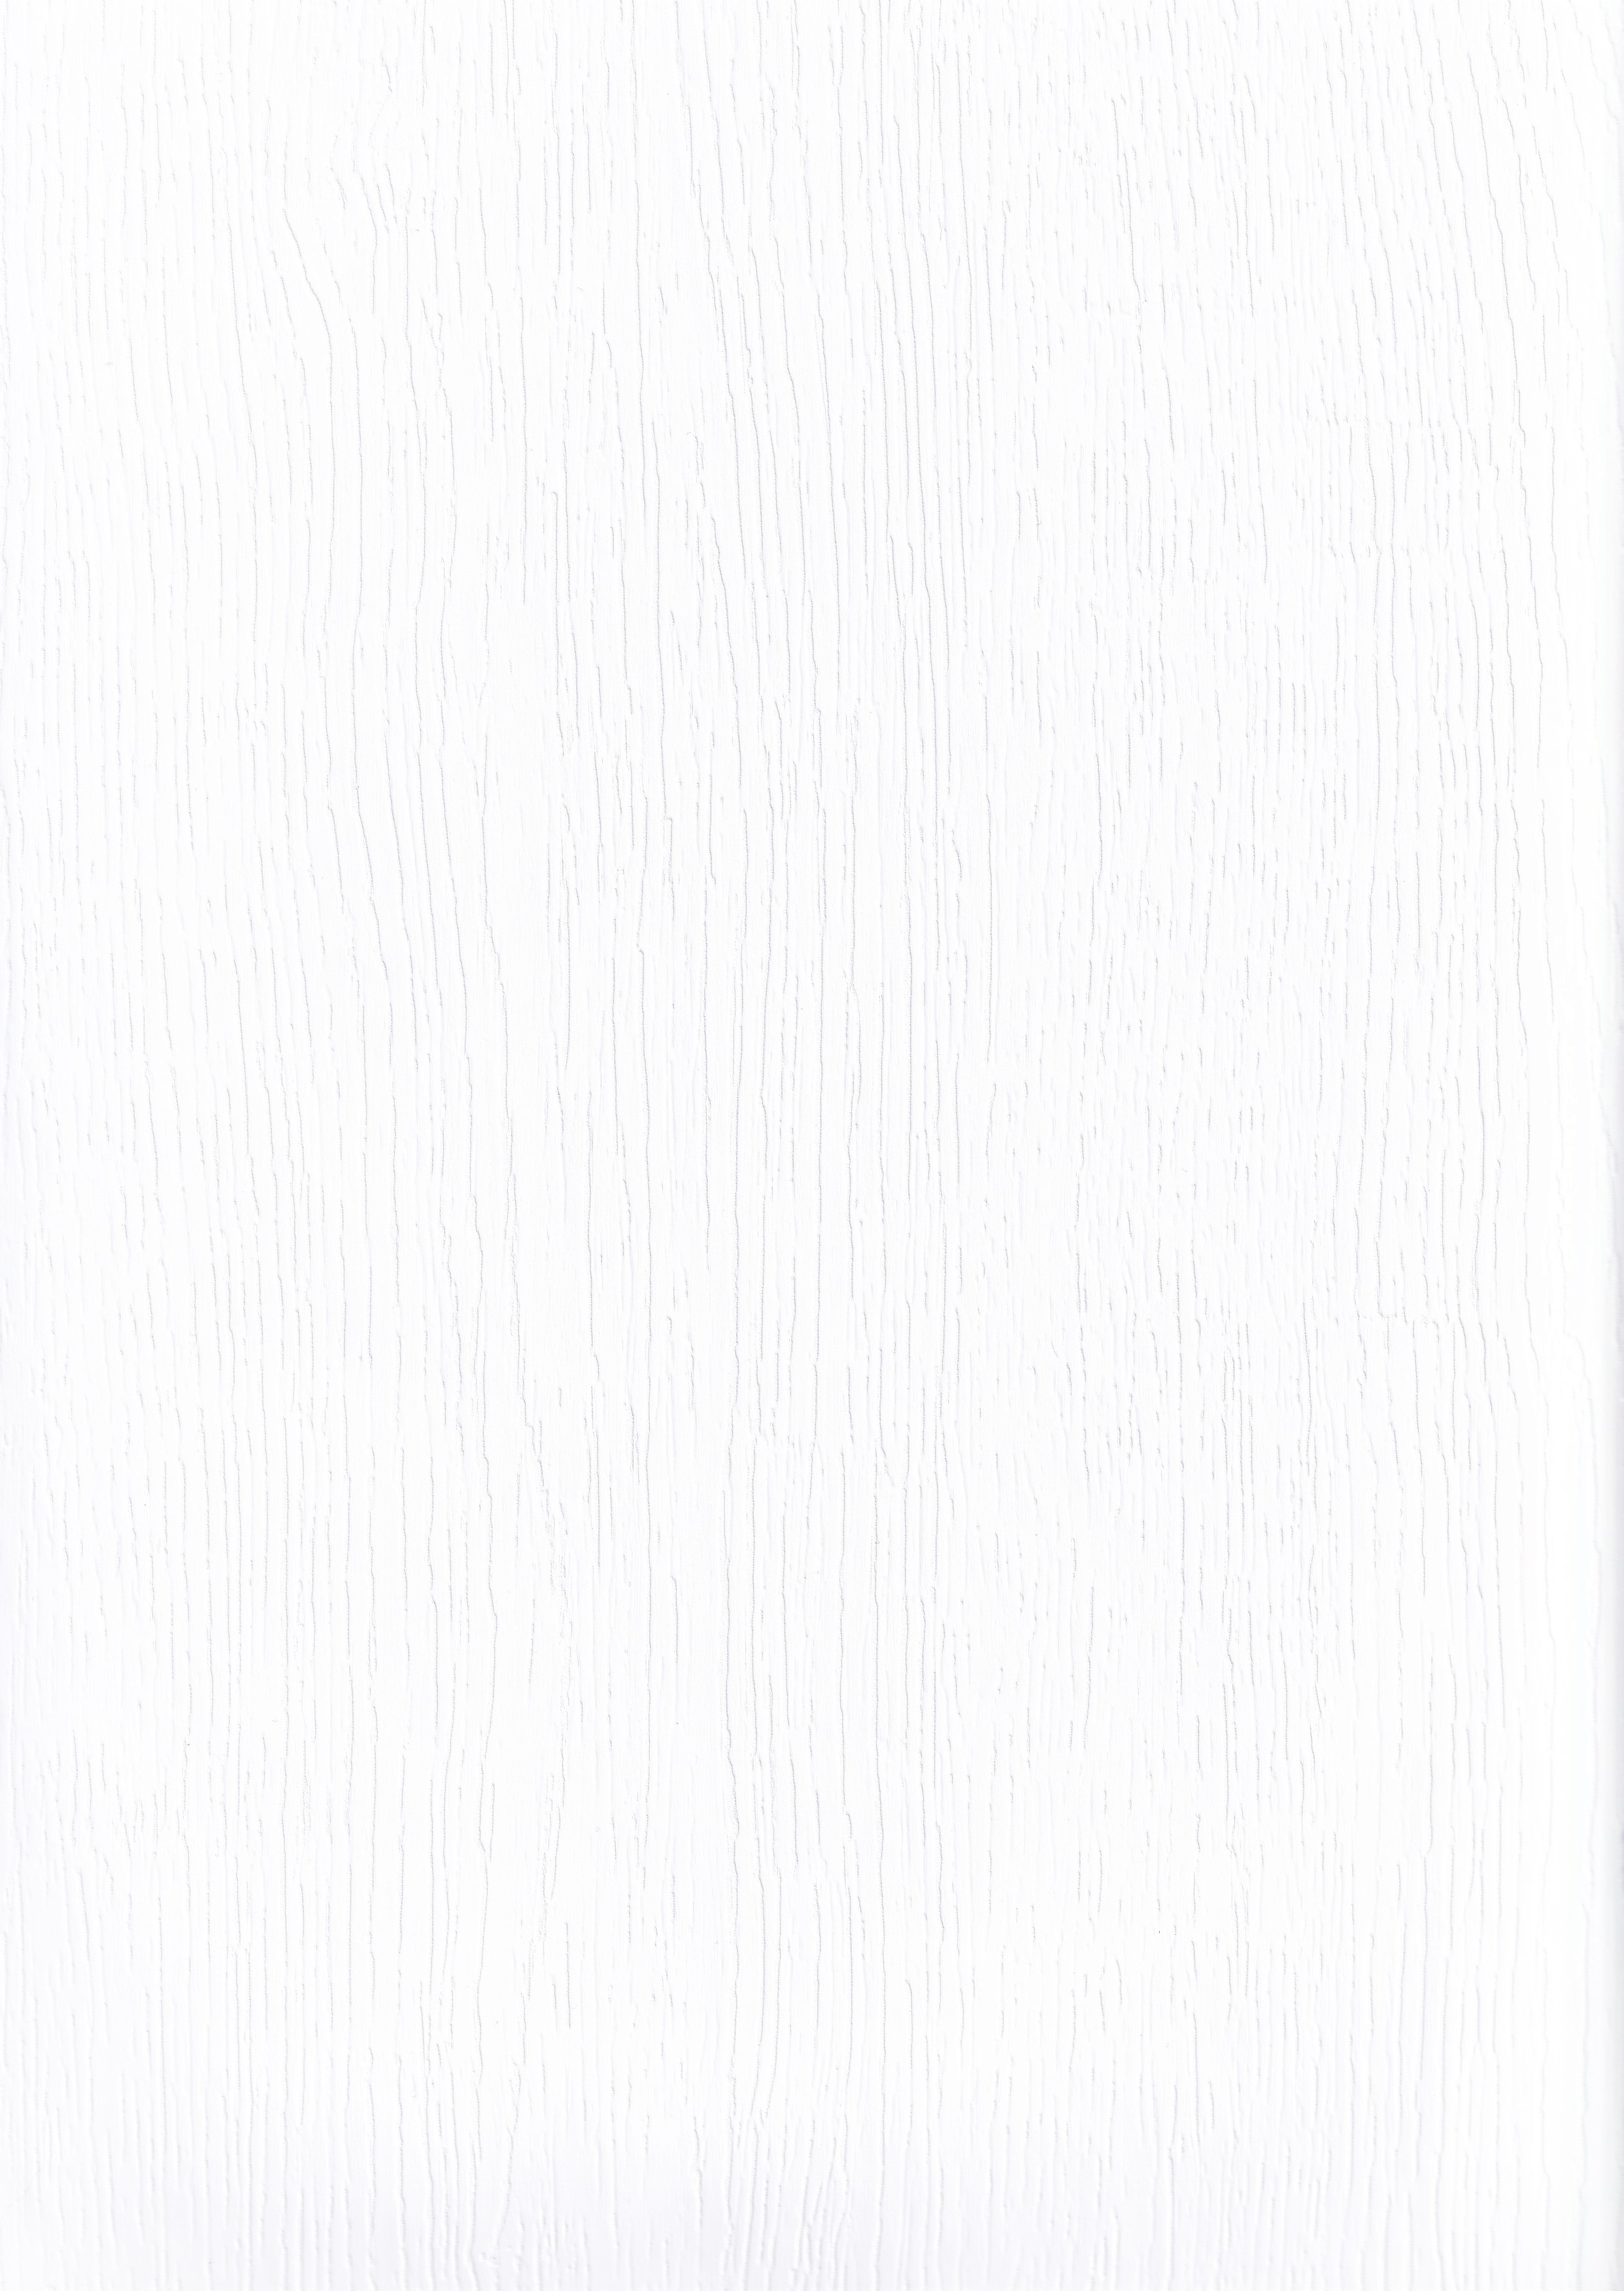 ПВХ пленка WHITE BOREAL из каталога MULTIMA by IMAWELL | ПВХ пленка БЕЛЫЙ БОРЕАЛ европейского качества для мебели и дверей от ЛАМИС | Каталог ПВХ пленок MULTIMA by IMAWELL